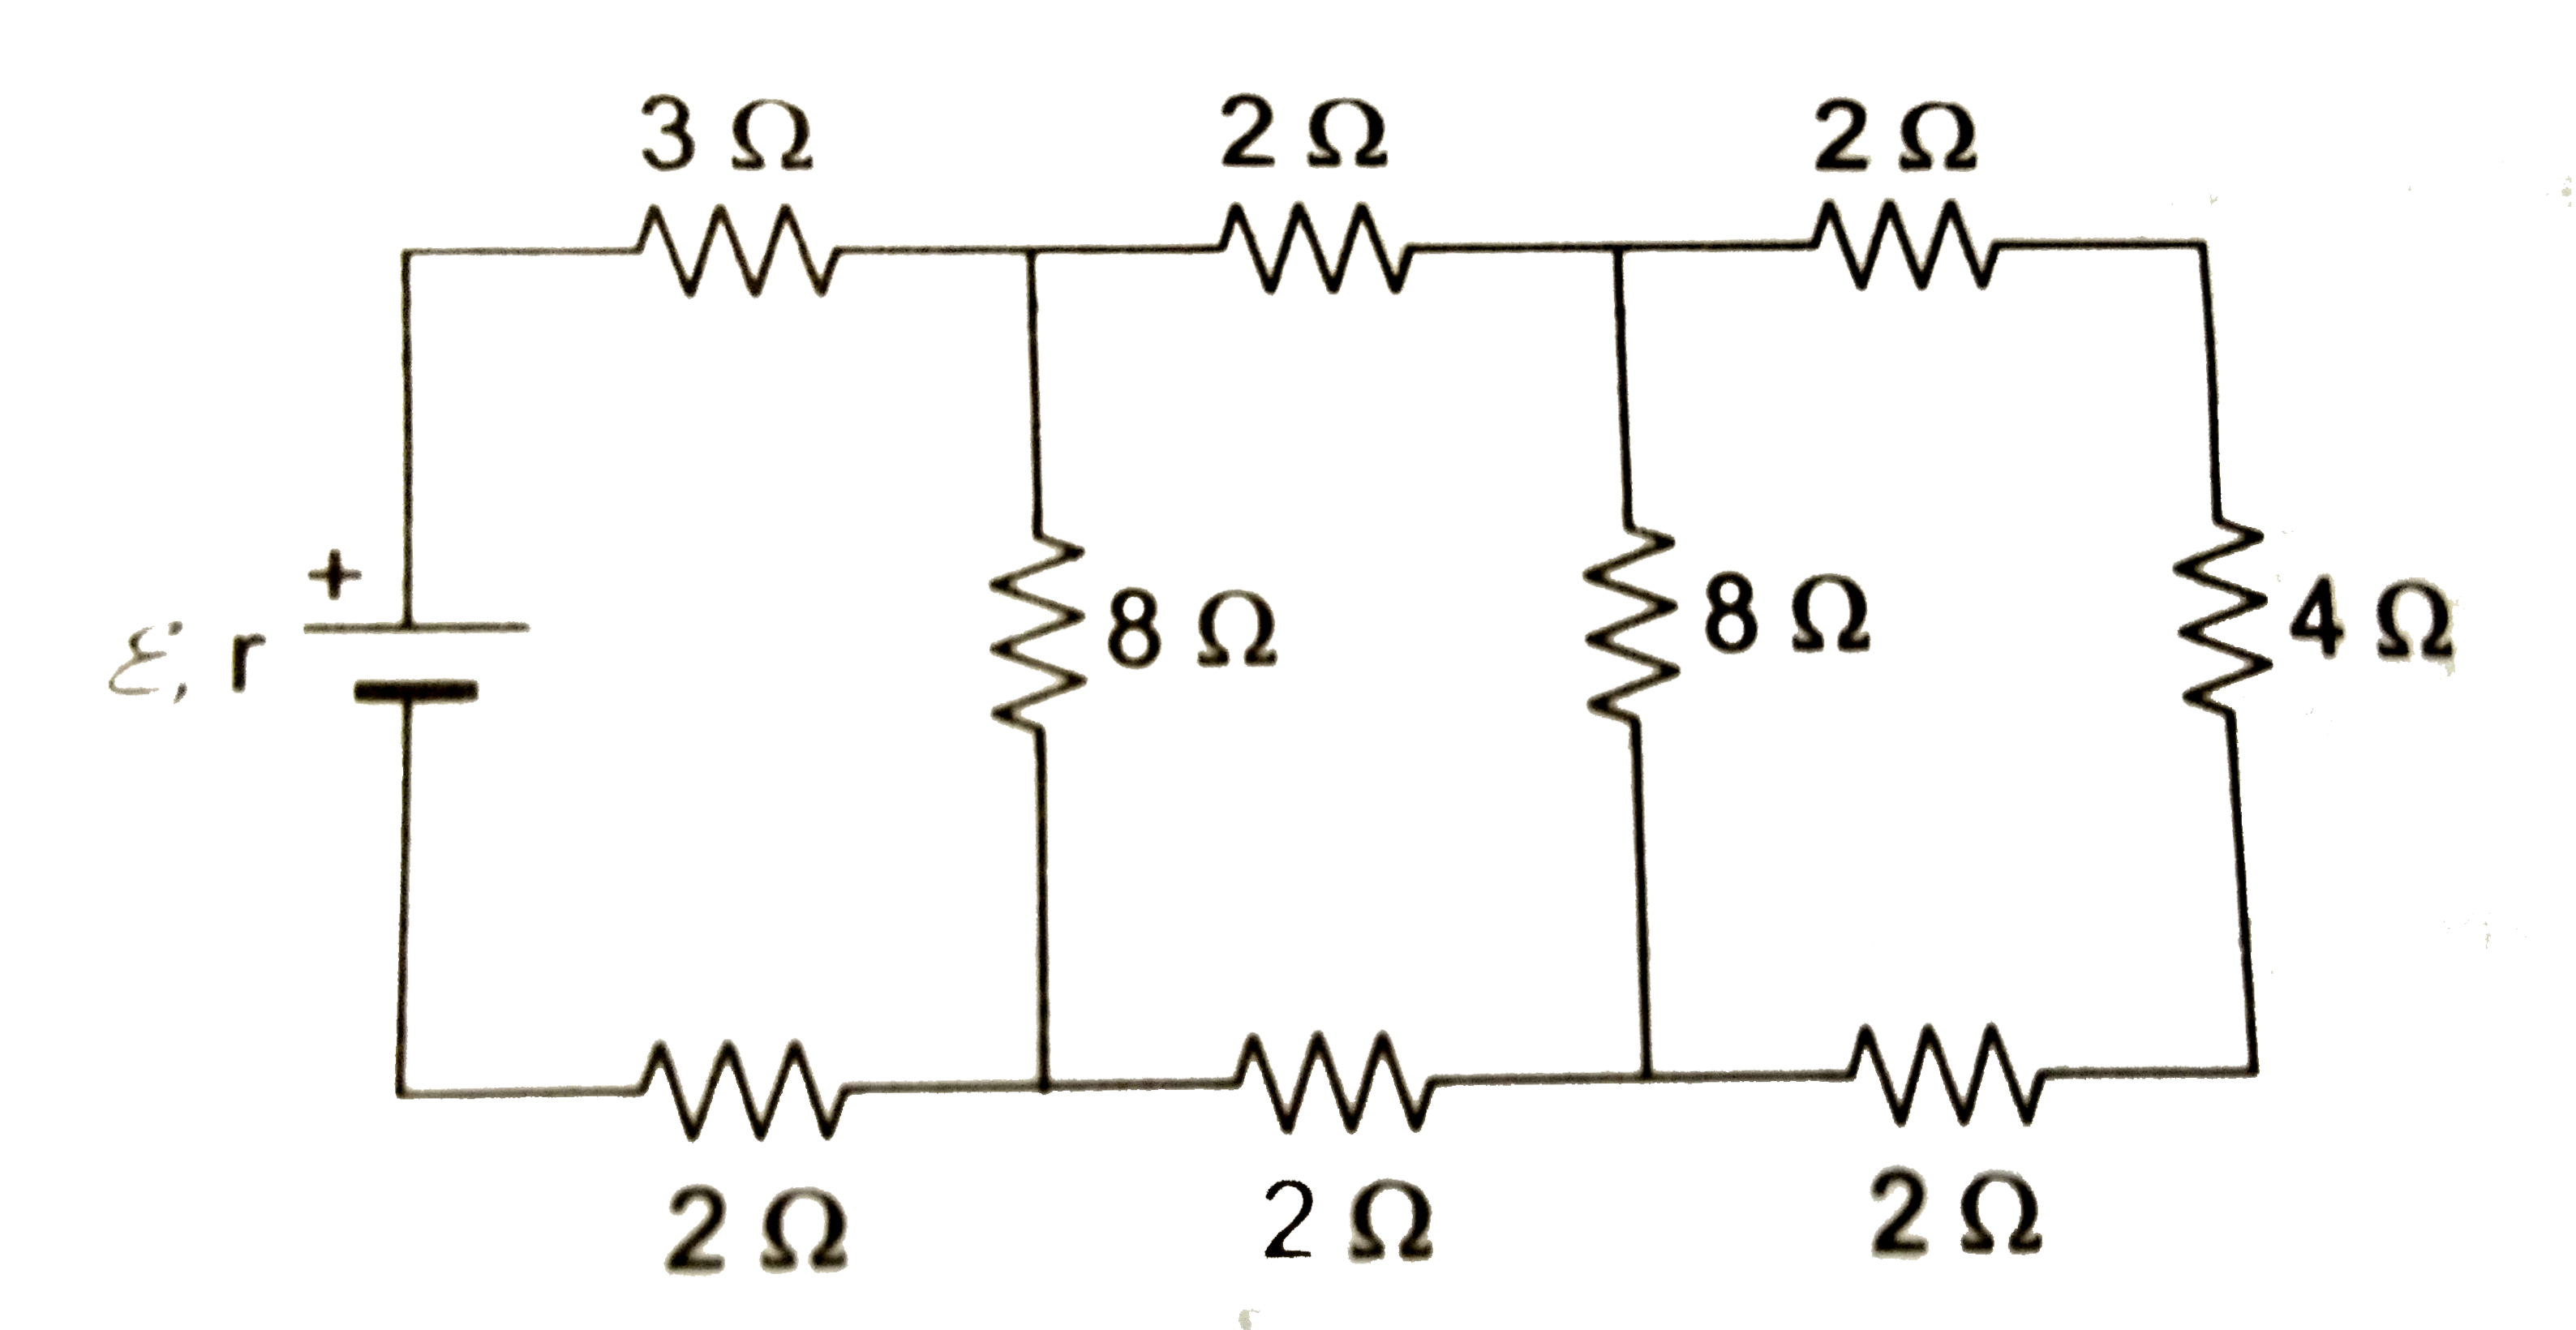 प्रदर्शित परिपथ में सेल का आंतरिक प्रतिरोध r=1Omega तथा इसका विधुत-वाहक बल epsi=10V है।